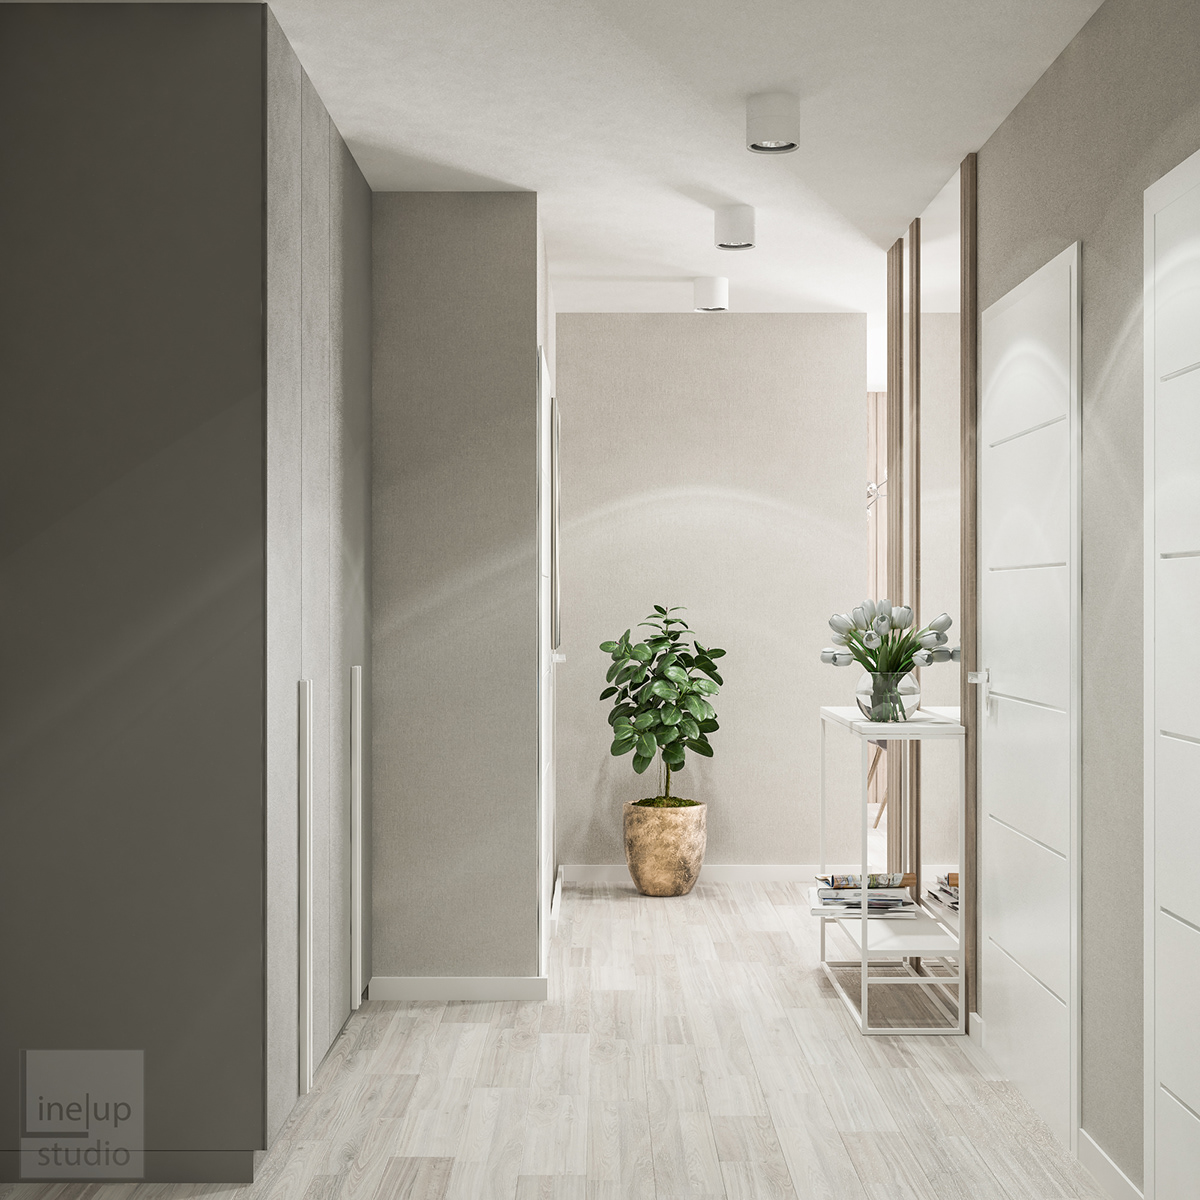 3dsmax vray Vizualization Project Interior design apartment poland